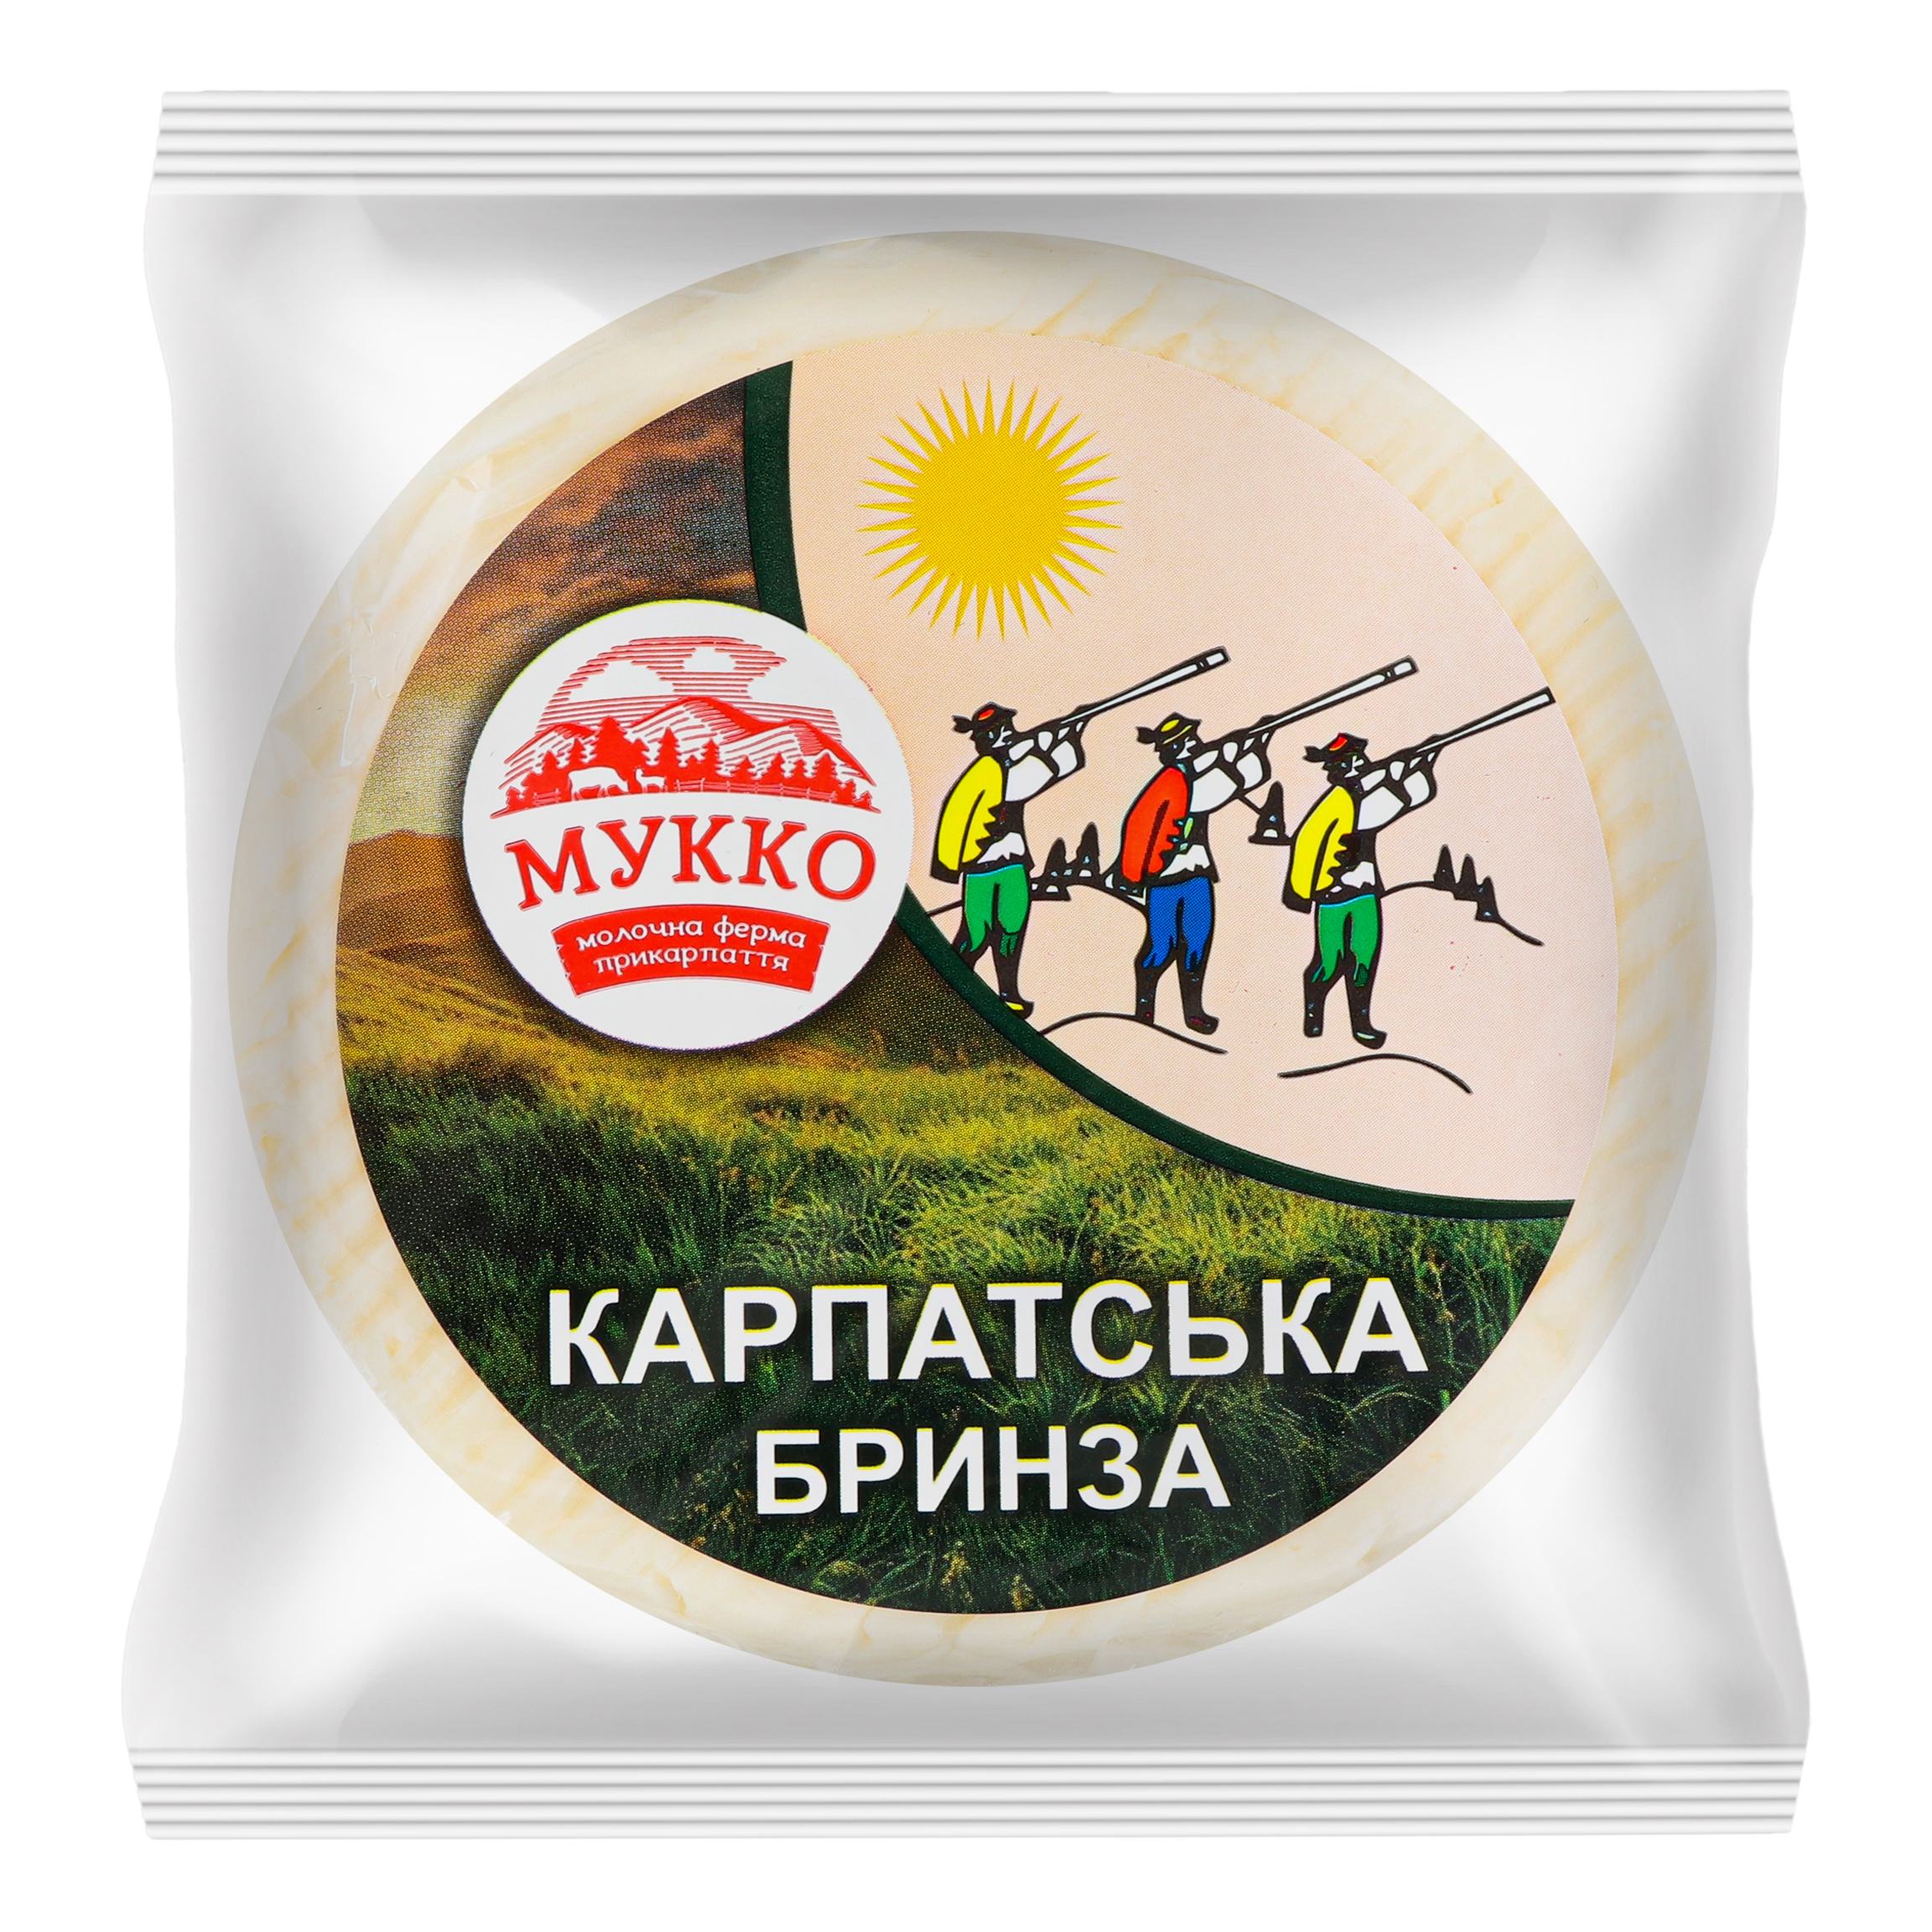 Mukko cheese Carpathian cheese 48,3%